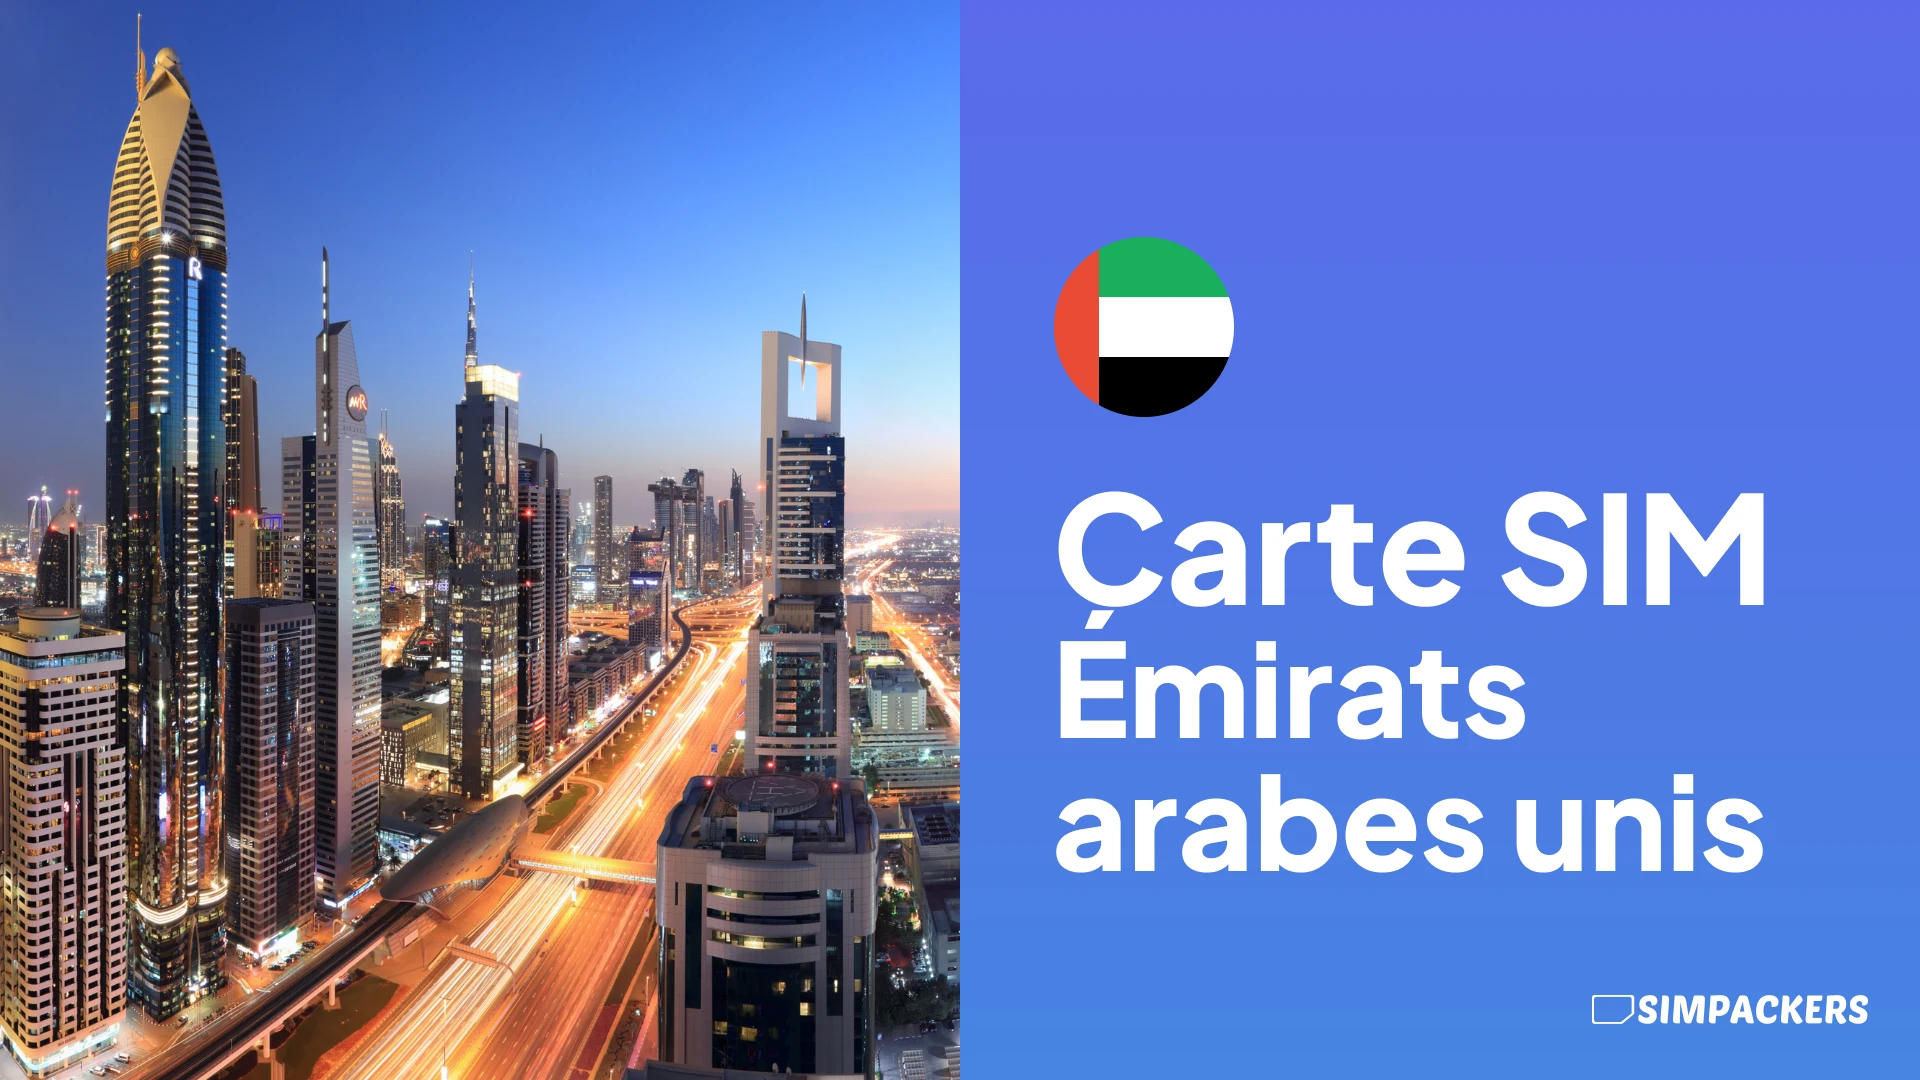 FR/FEATURED_IMAGES/carte-sim-emirates-arabes-unis.webp